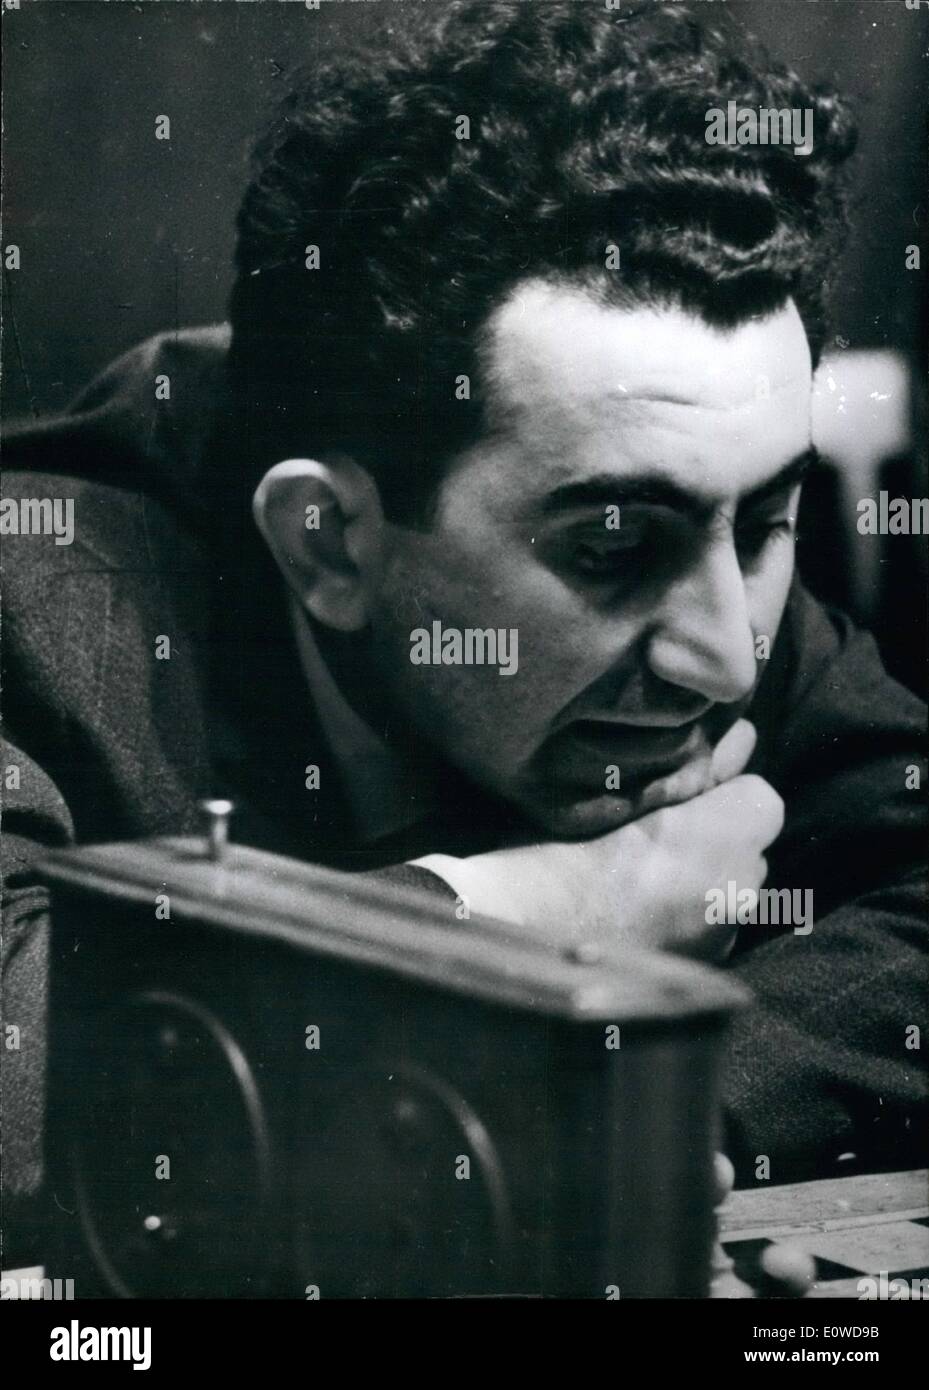 Giugno 06, 1962 - Petrosian può impugnare campione del mondo di scacchi Botwinnik 33 anno vecchio armeno Tigran Petrosjan (foto) potrebbe vincere il torneo di scacchi campionati del mondo a Curacao (Antiless) e con ciò che egli è diventato il nuovo Challenger per il campione del mondo Botwinnik. Foto Stock